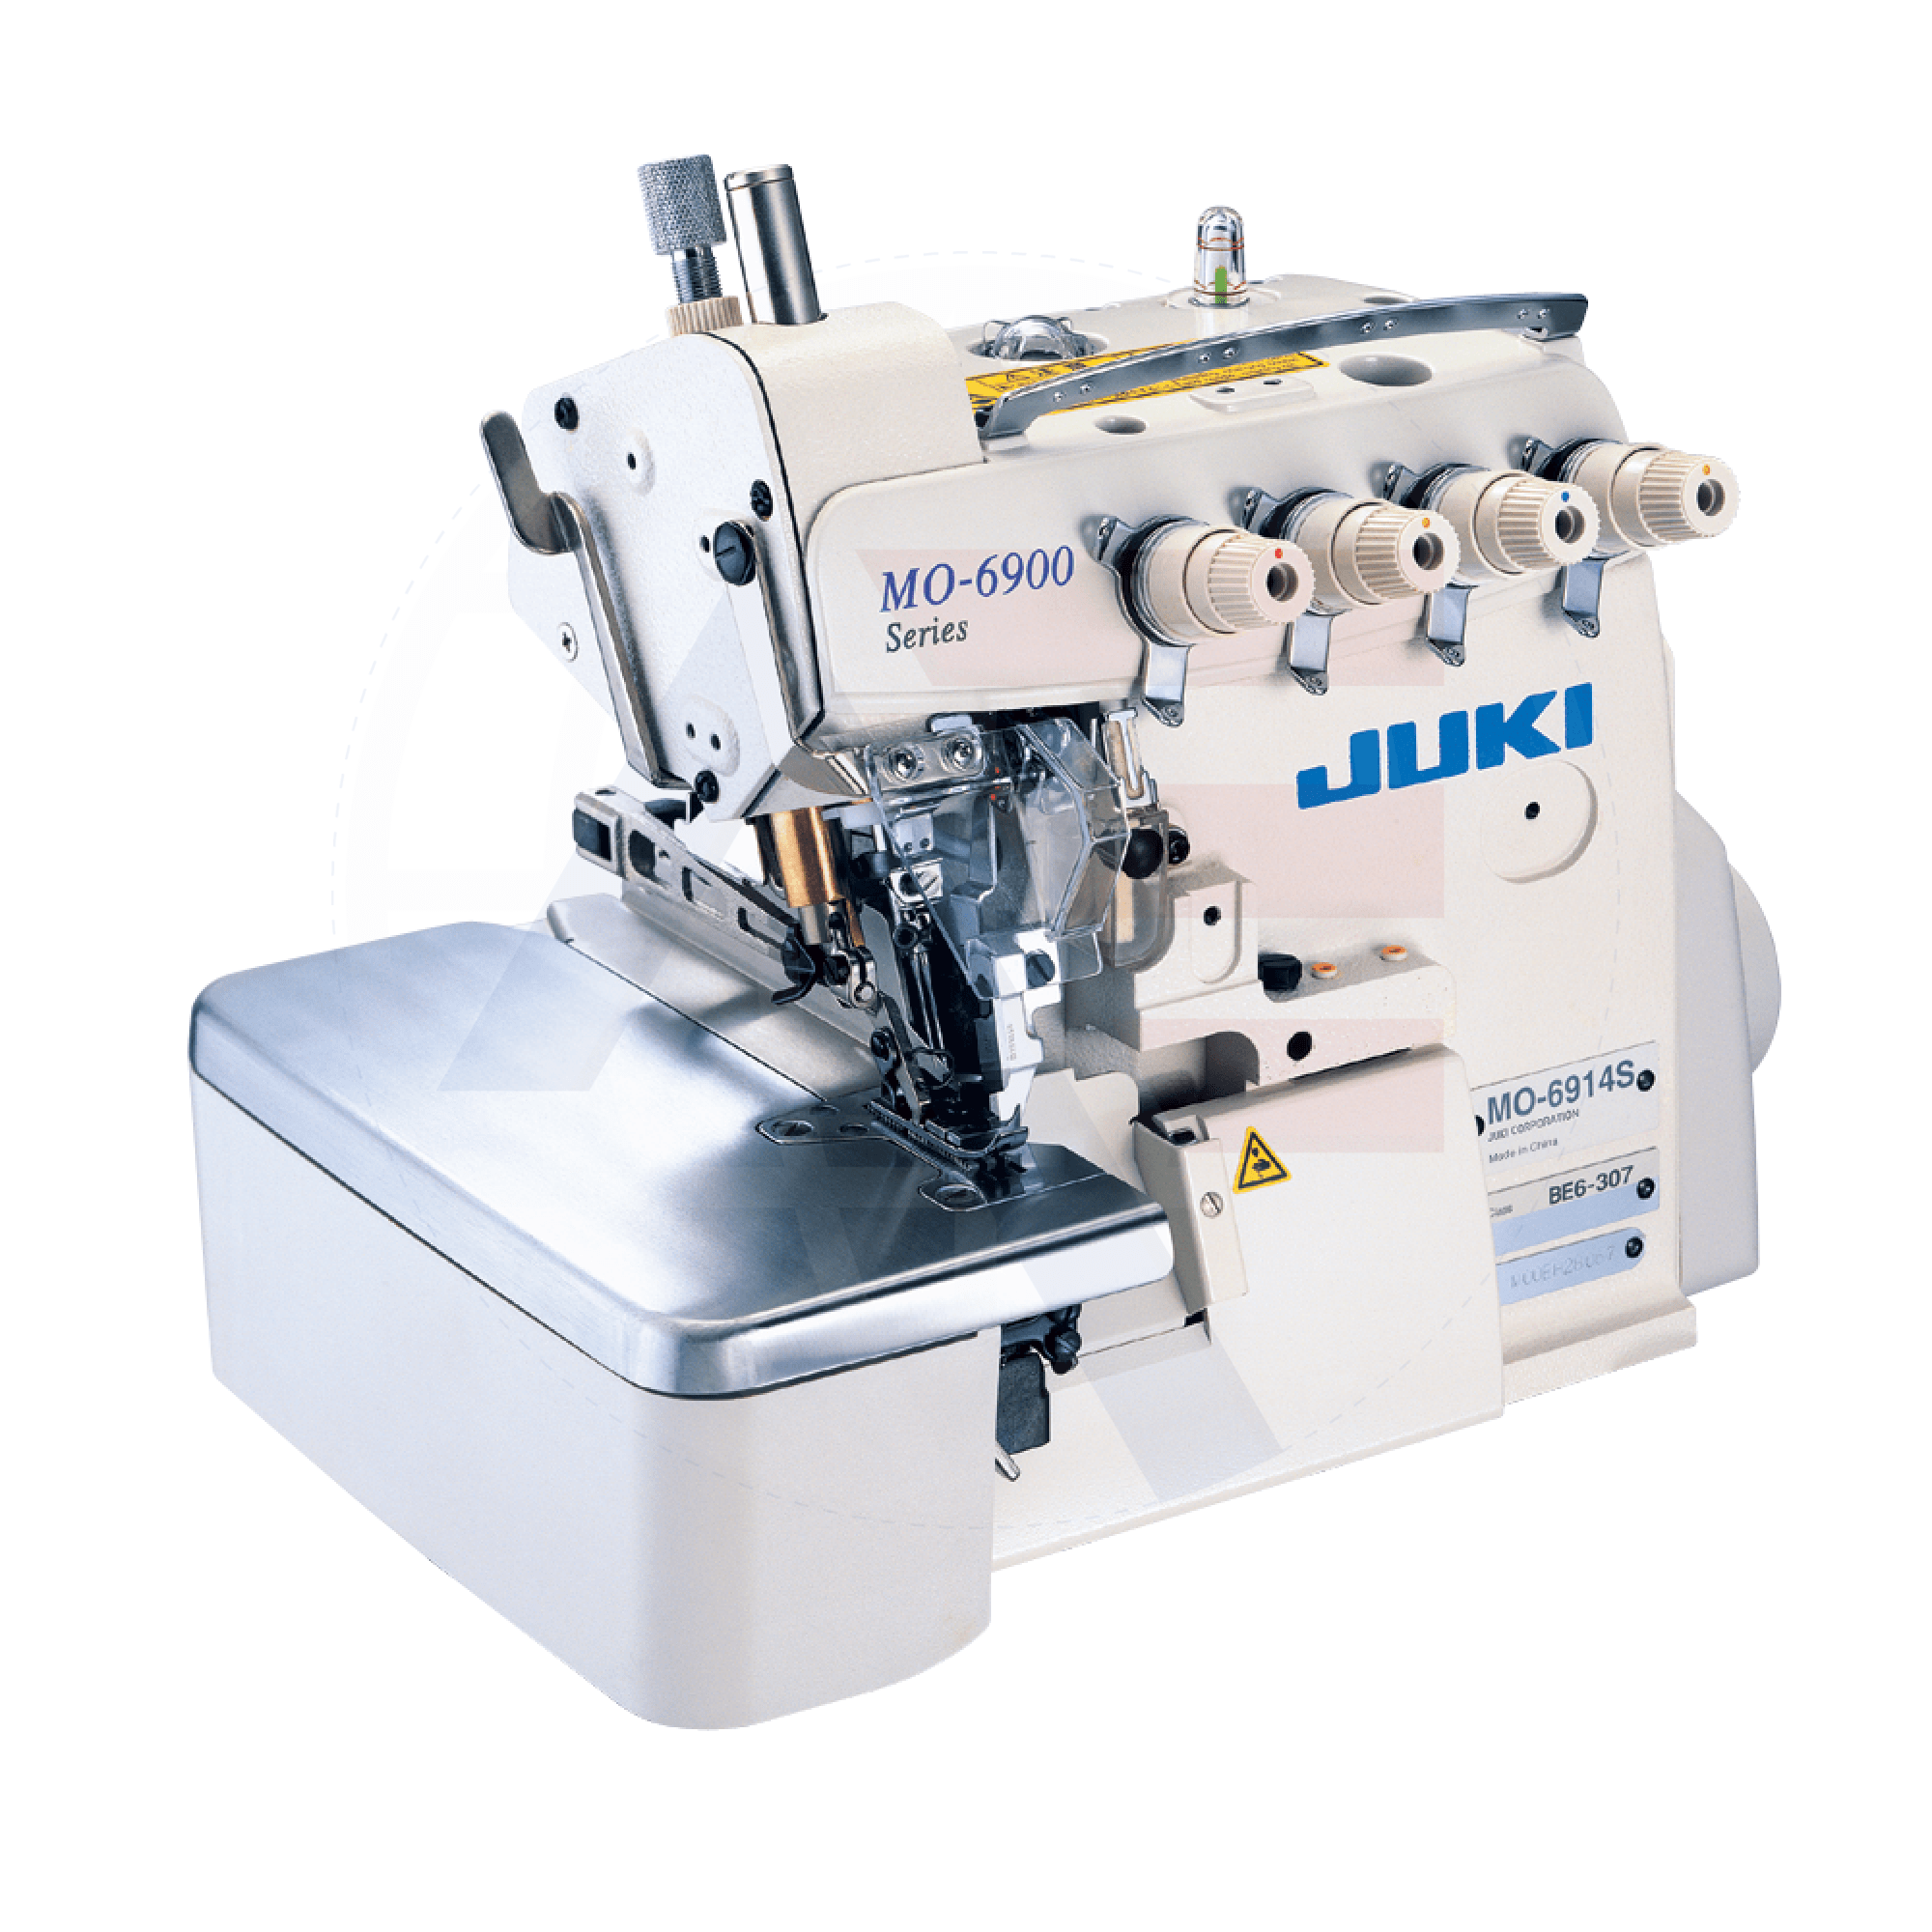 Juki Mo-6914S 4-Thread Overlock Machine Sewing Machines